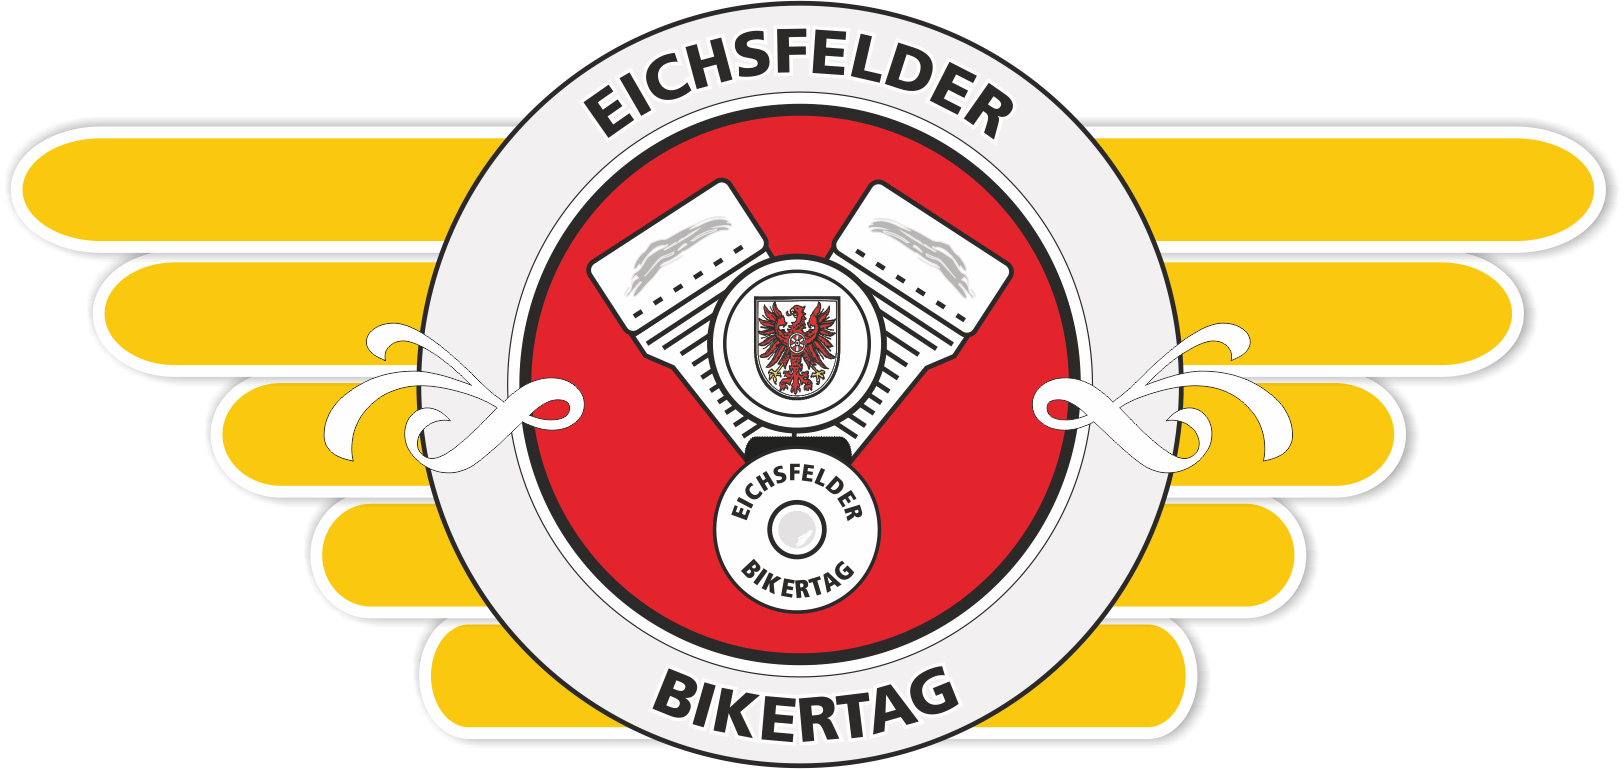 Eichsfelder Bikertag